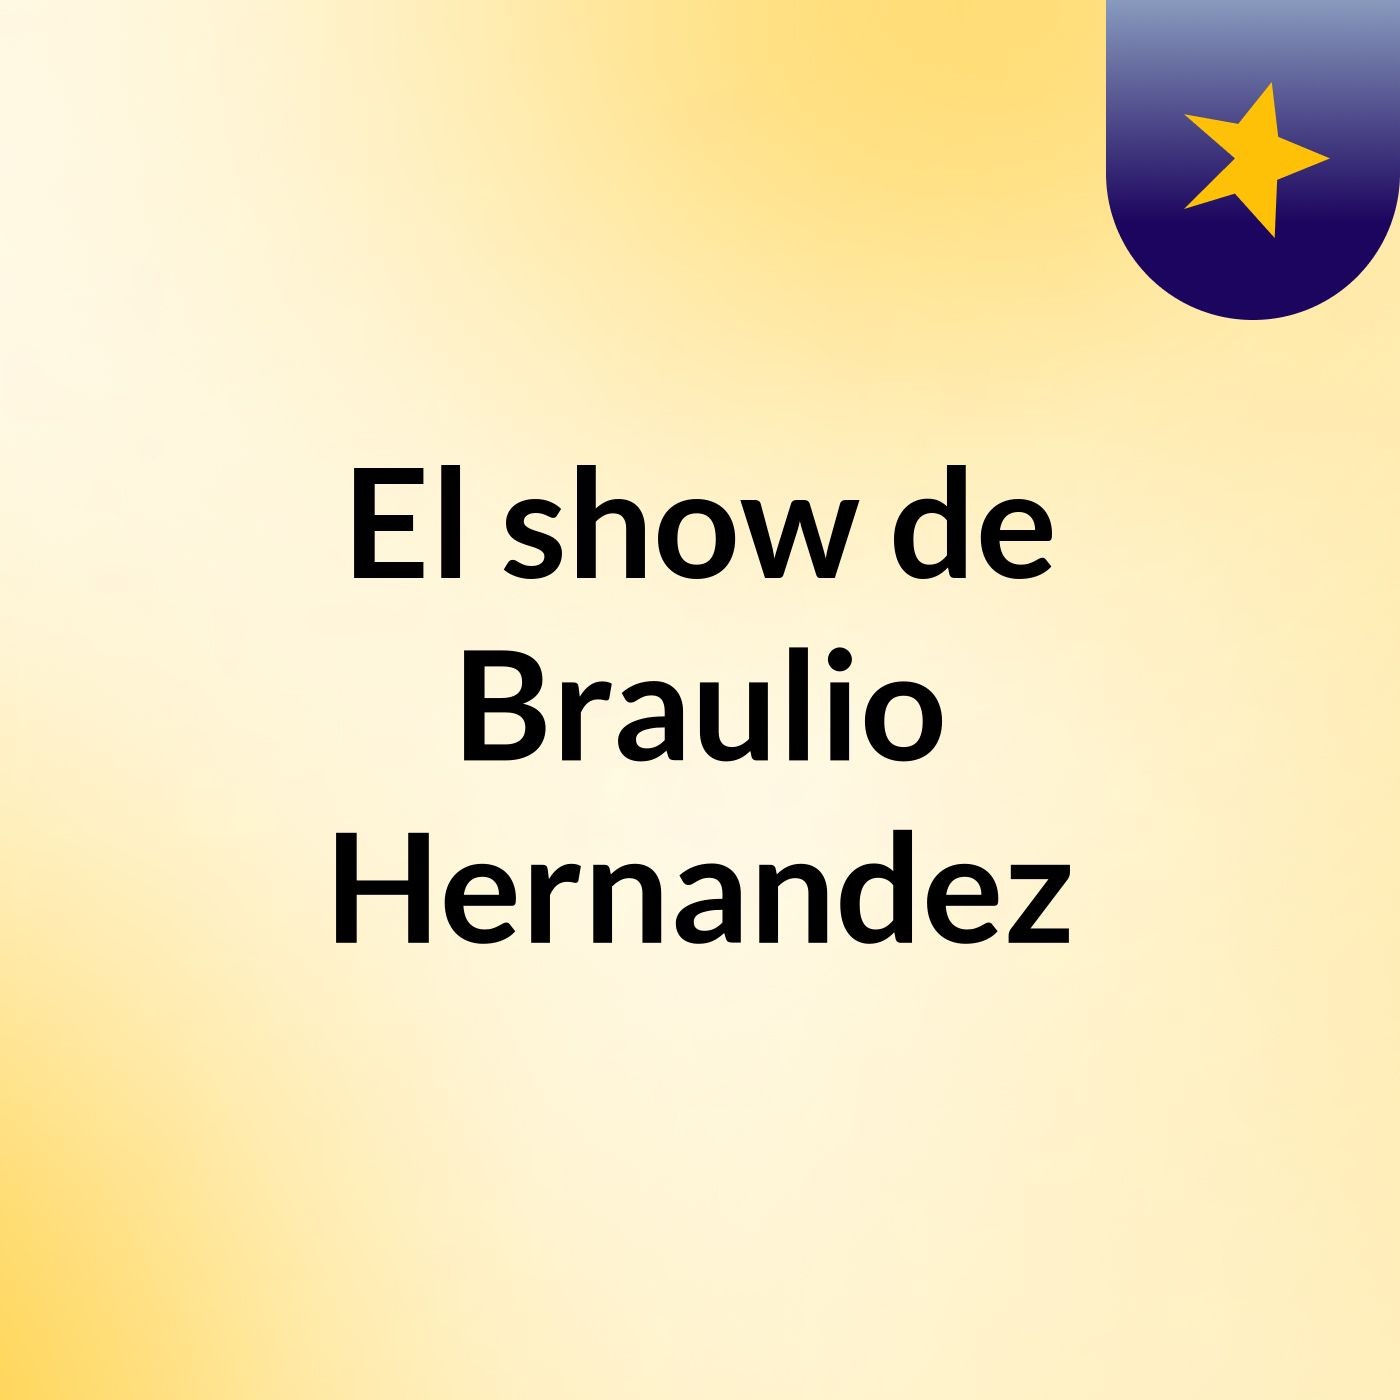 El show de Braulio Hernandez